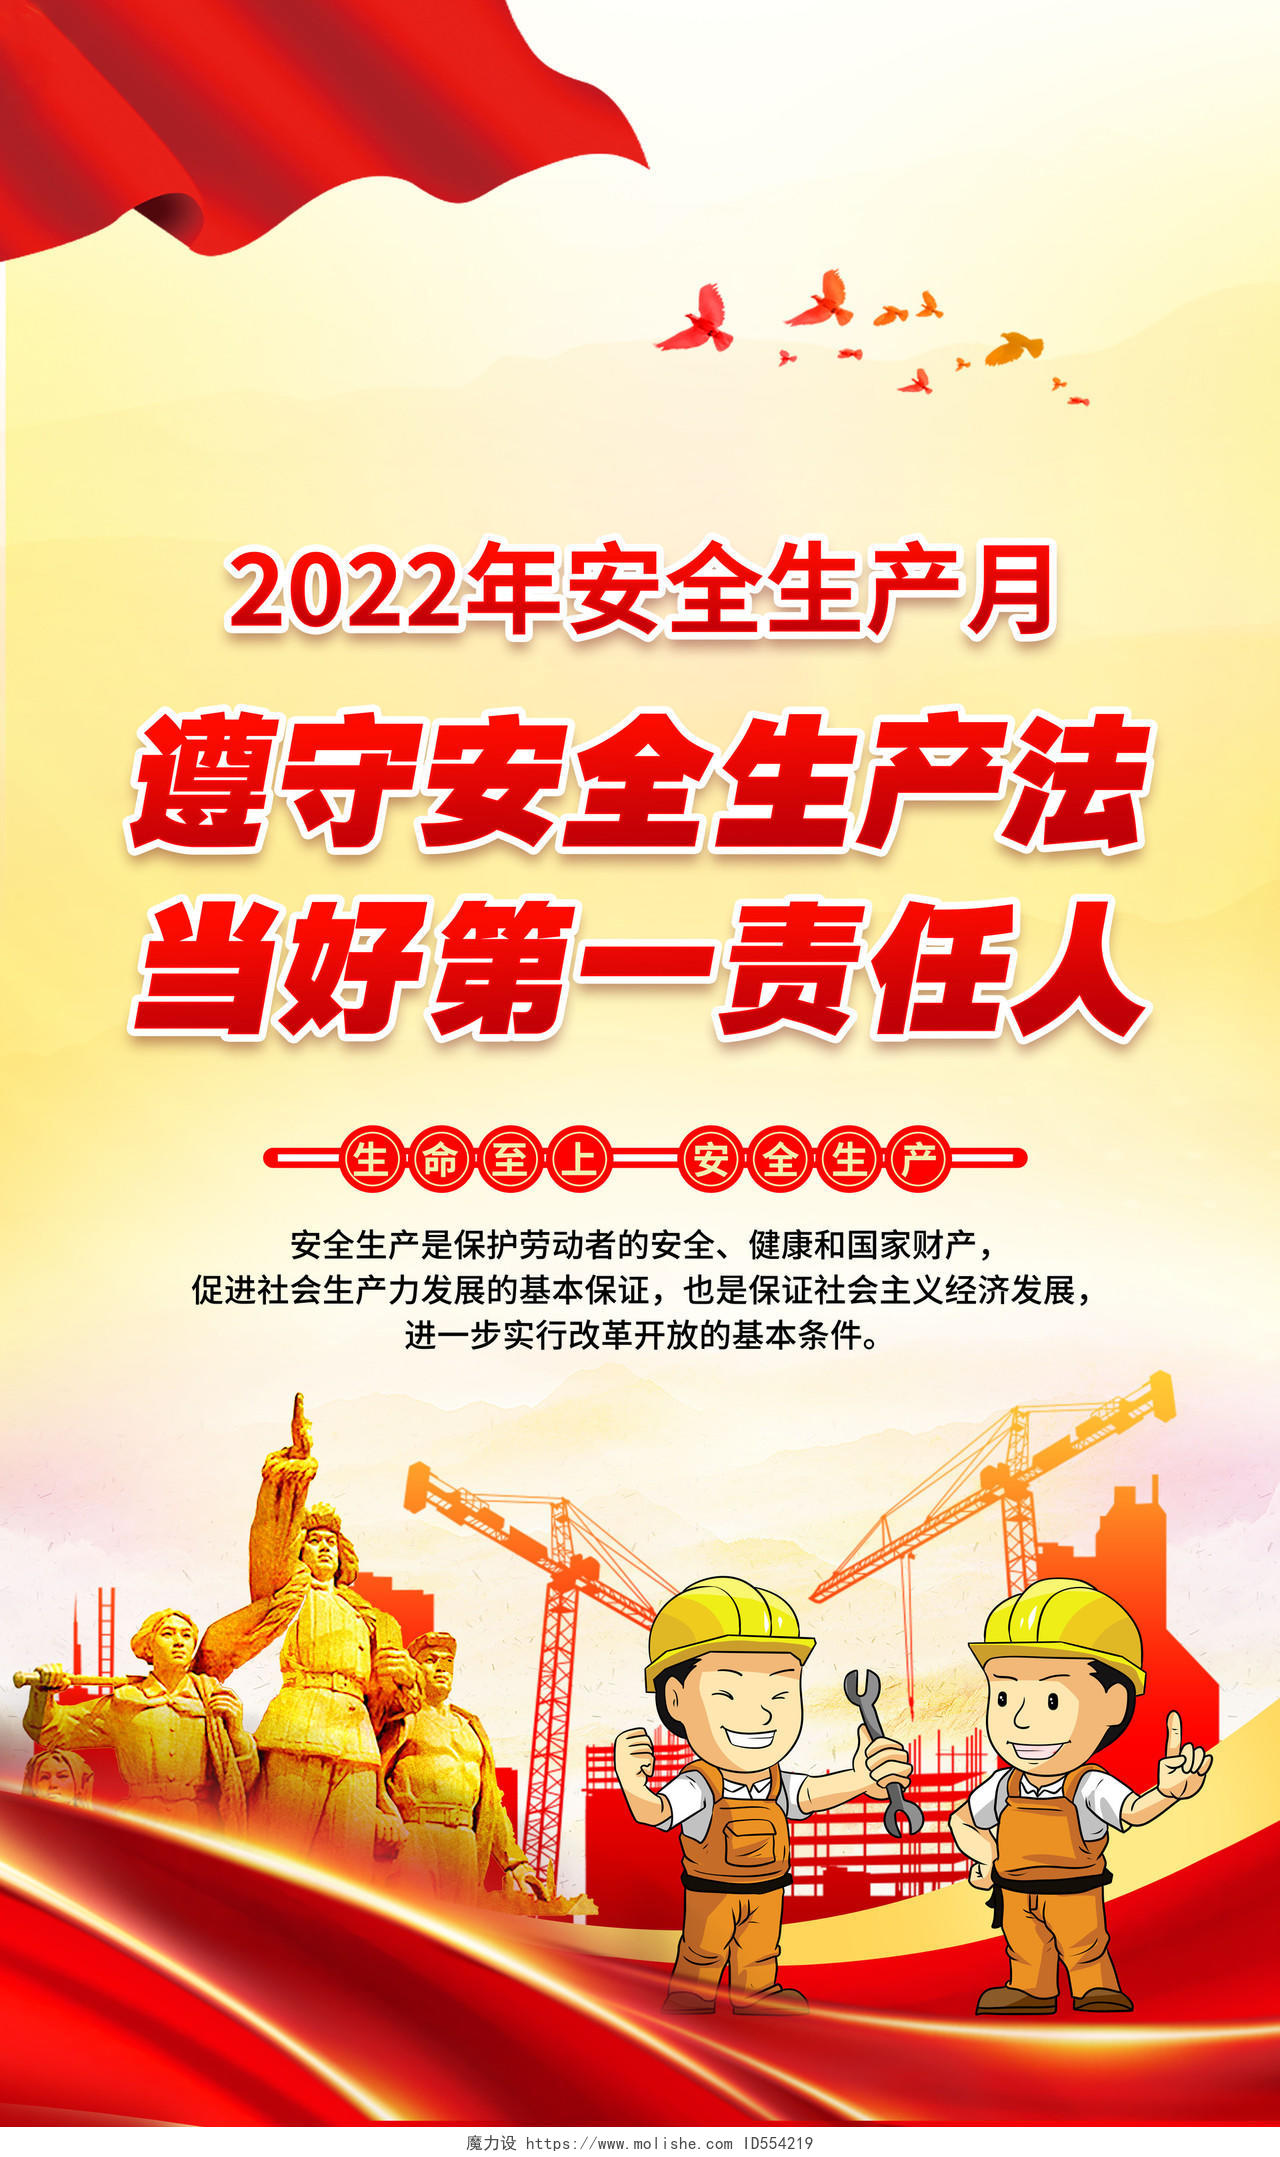 黄色风格2022年安全生产月宣传海报